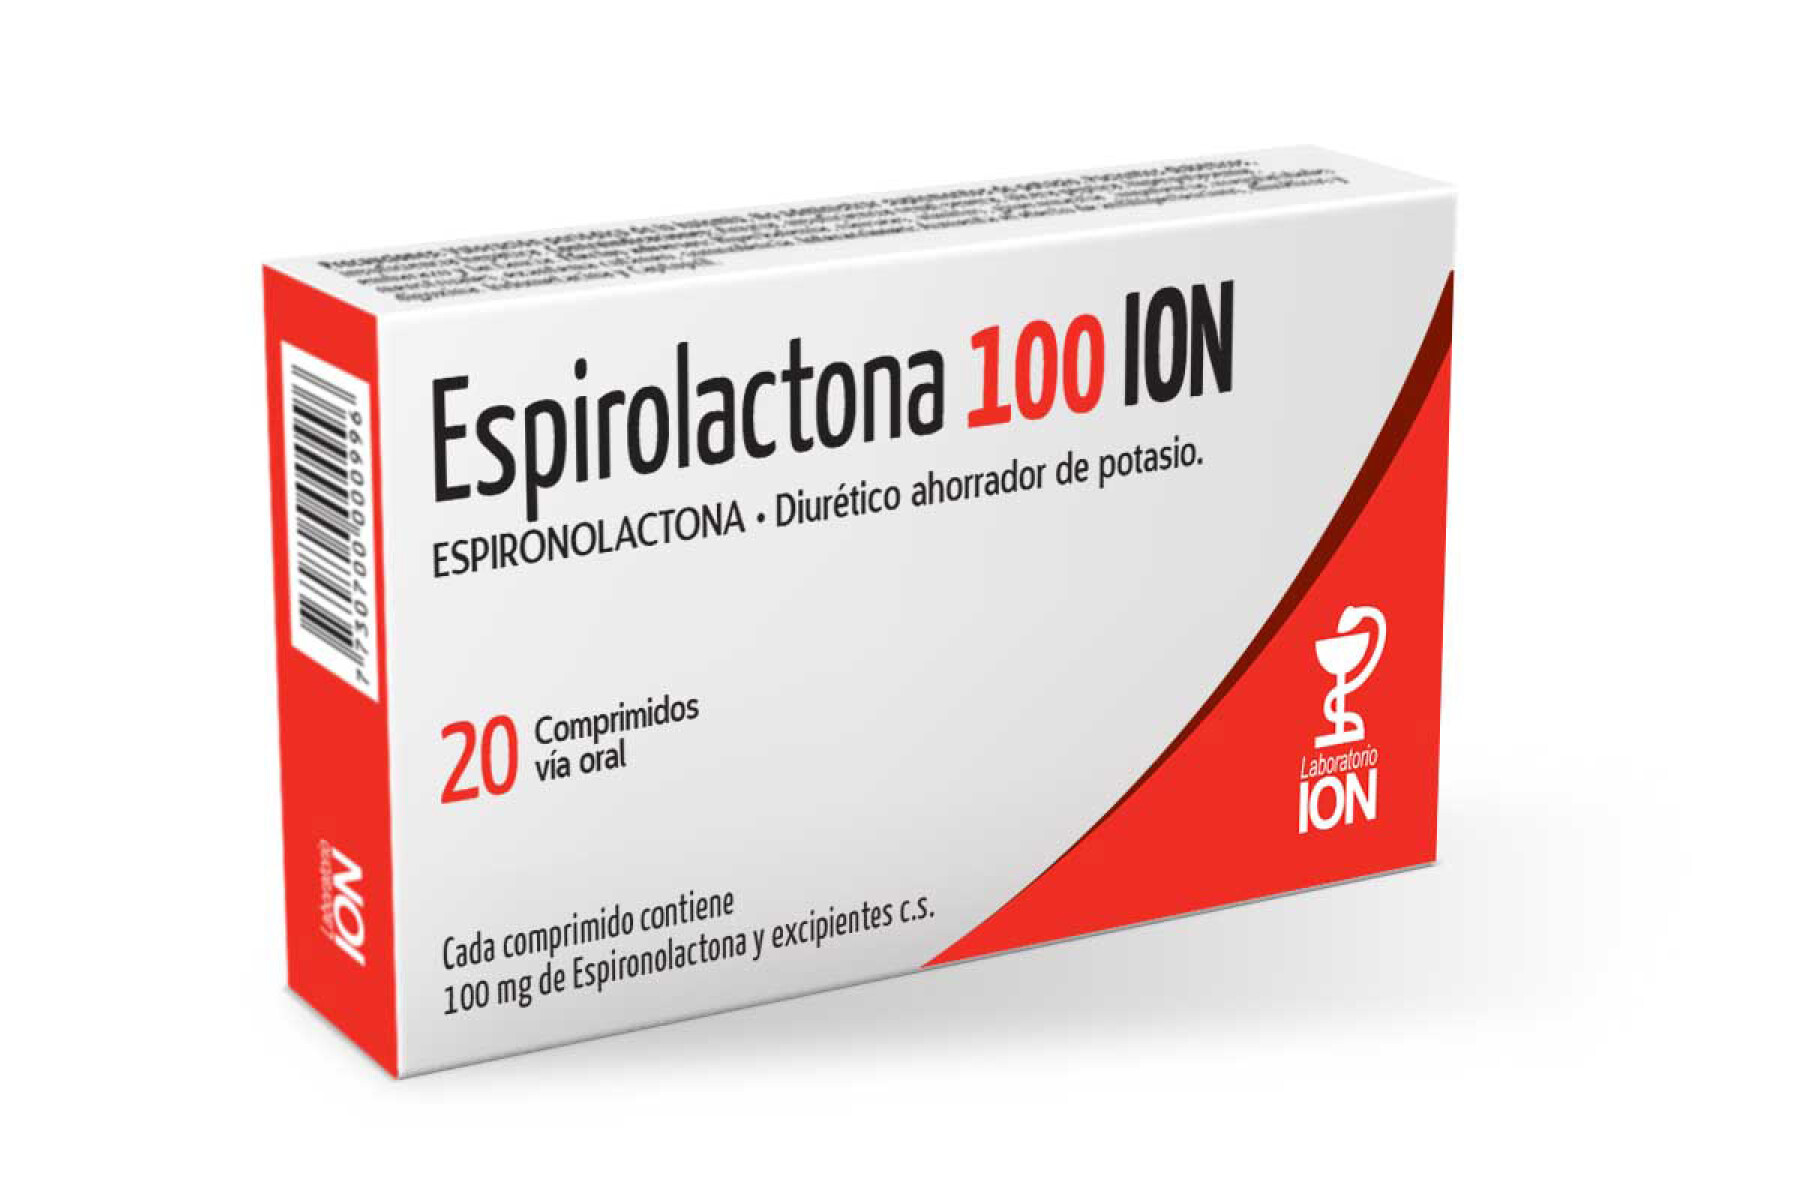 Espirolactona Ion 100 